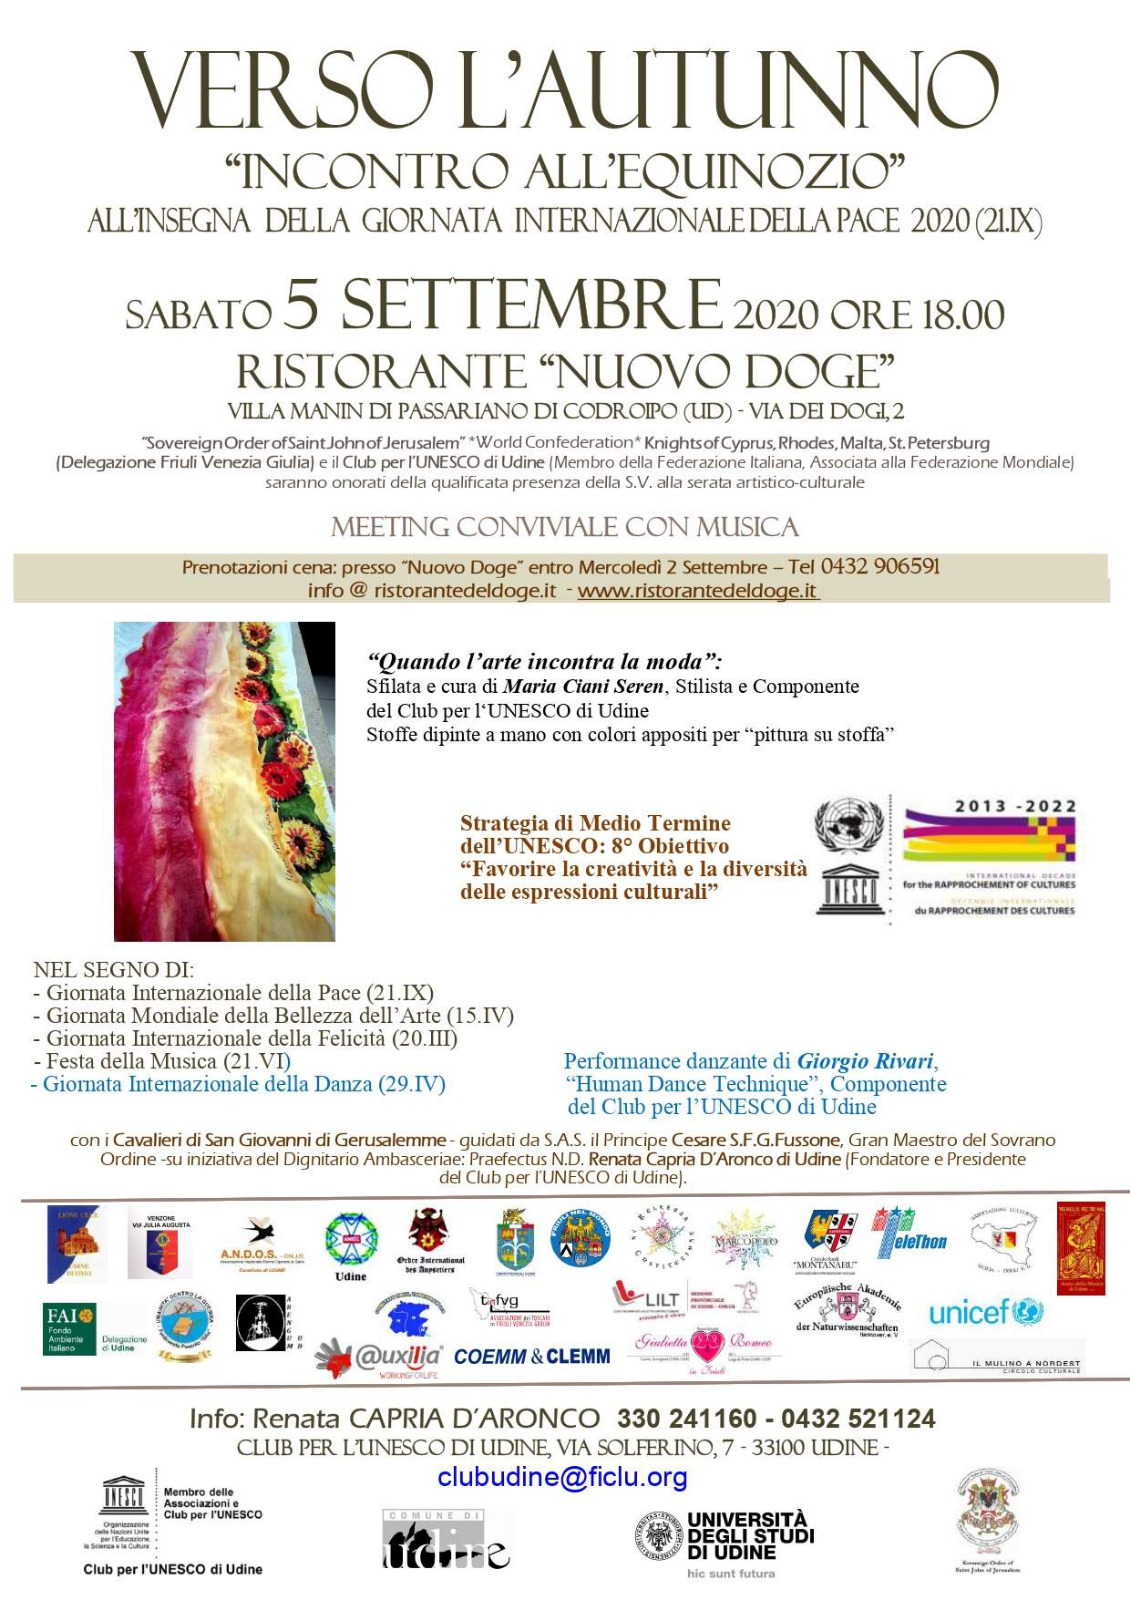 Club per l'Unesco Udine